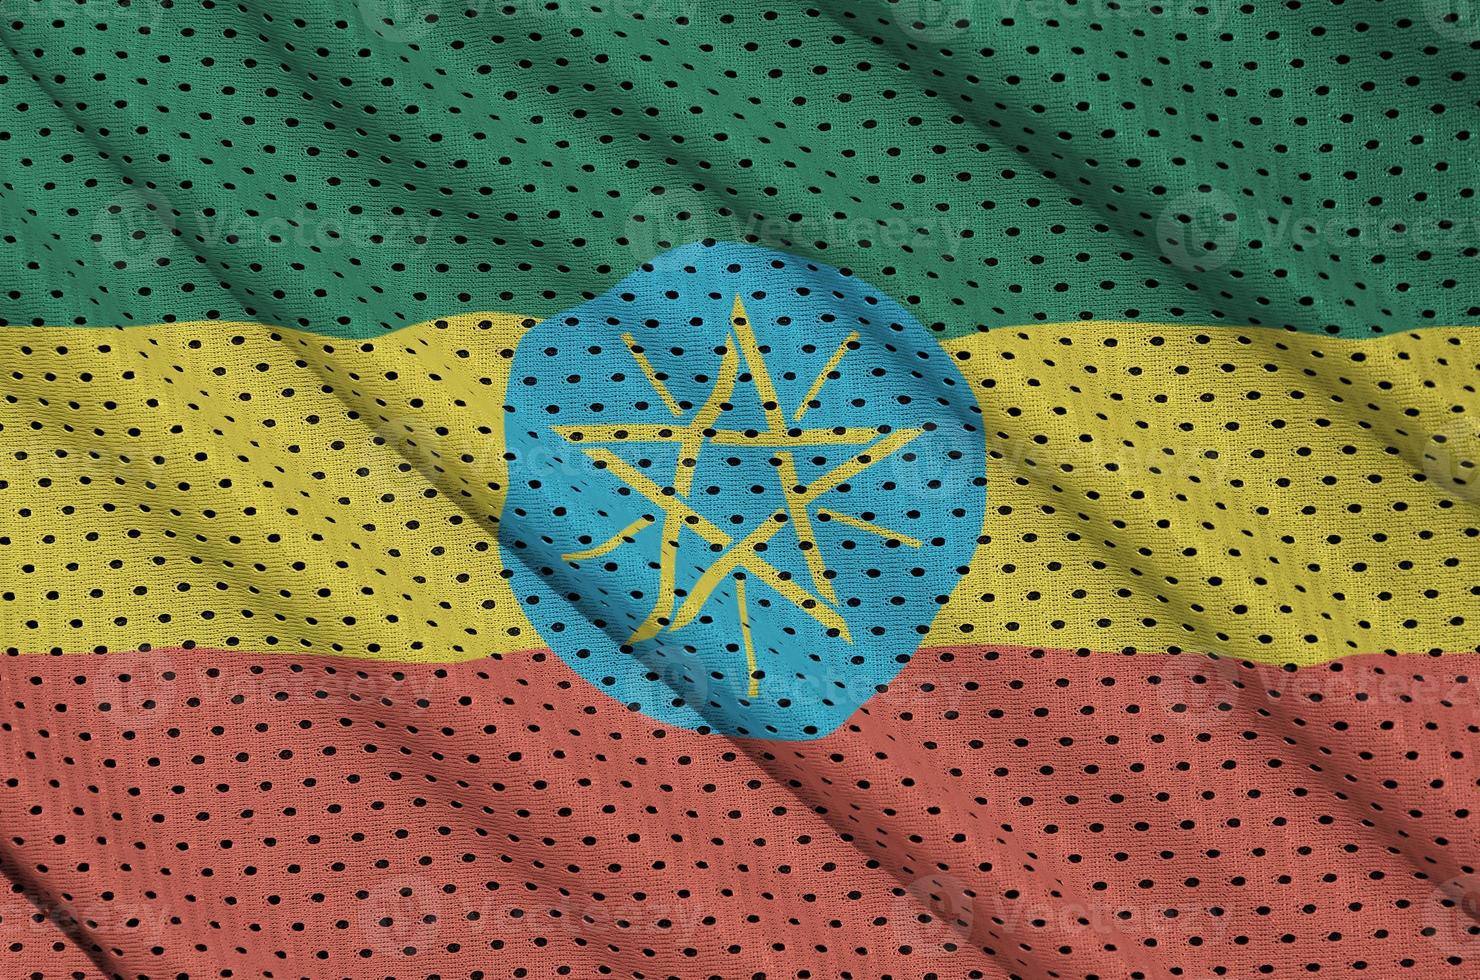 etiopien flagga tryckt på en polyester nylon- sportkläder maska fabri foto